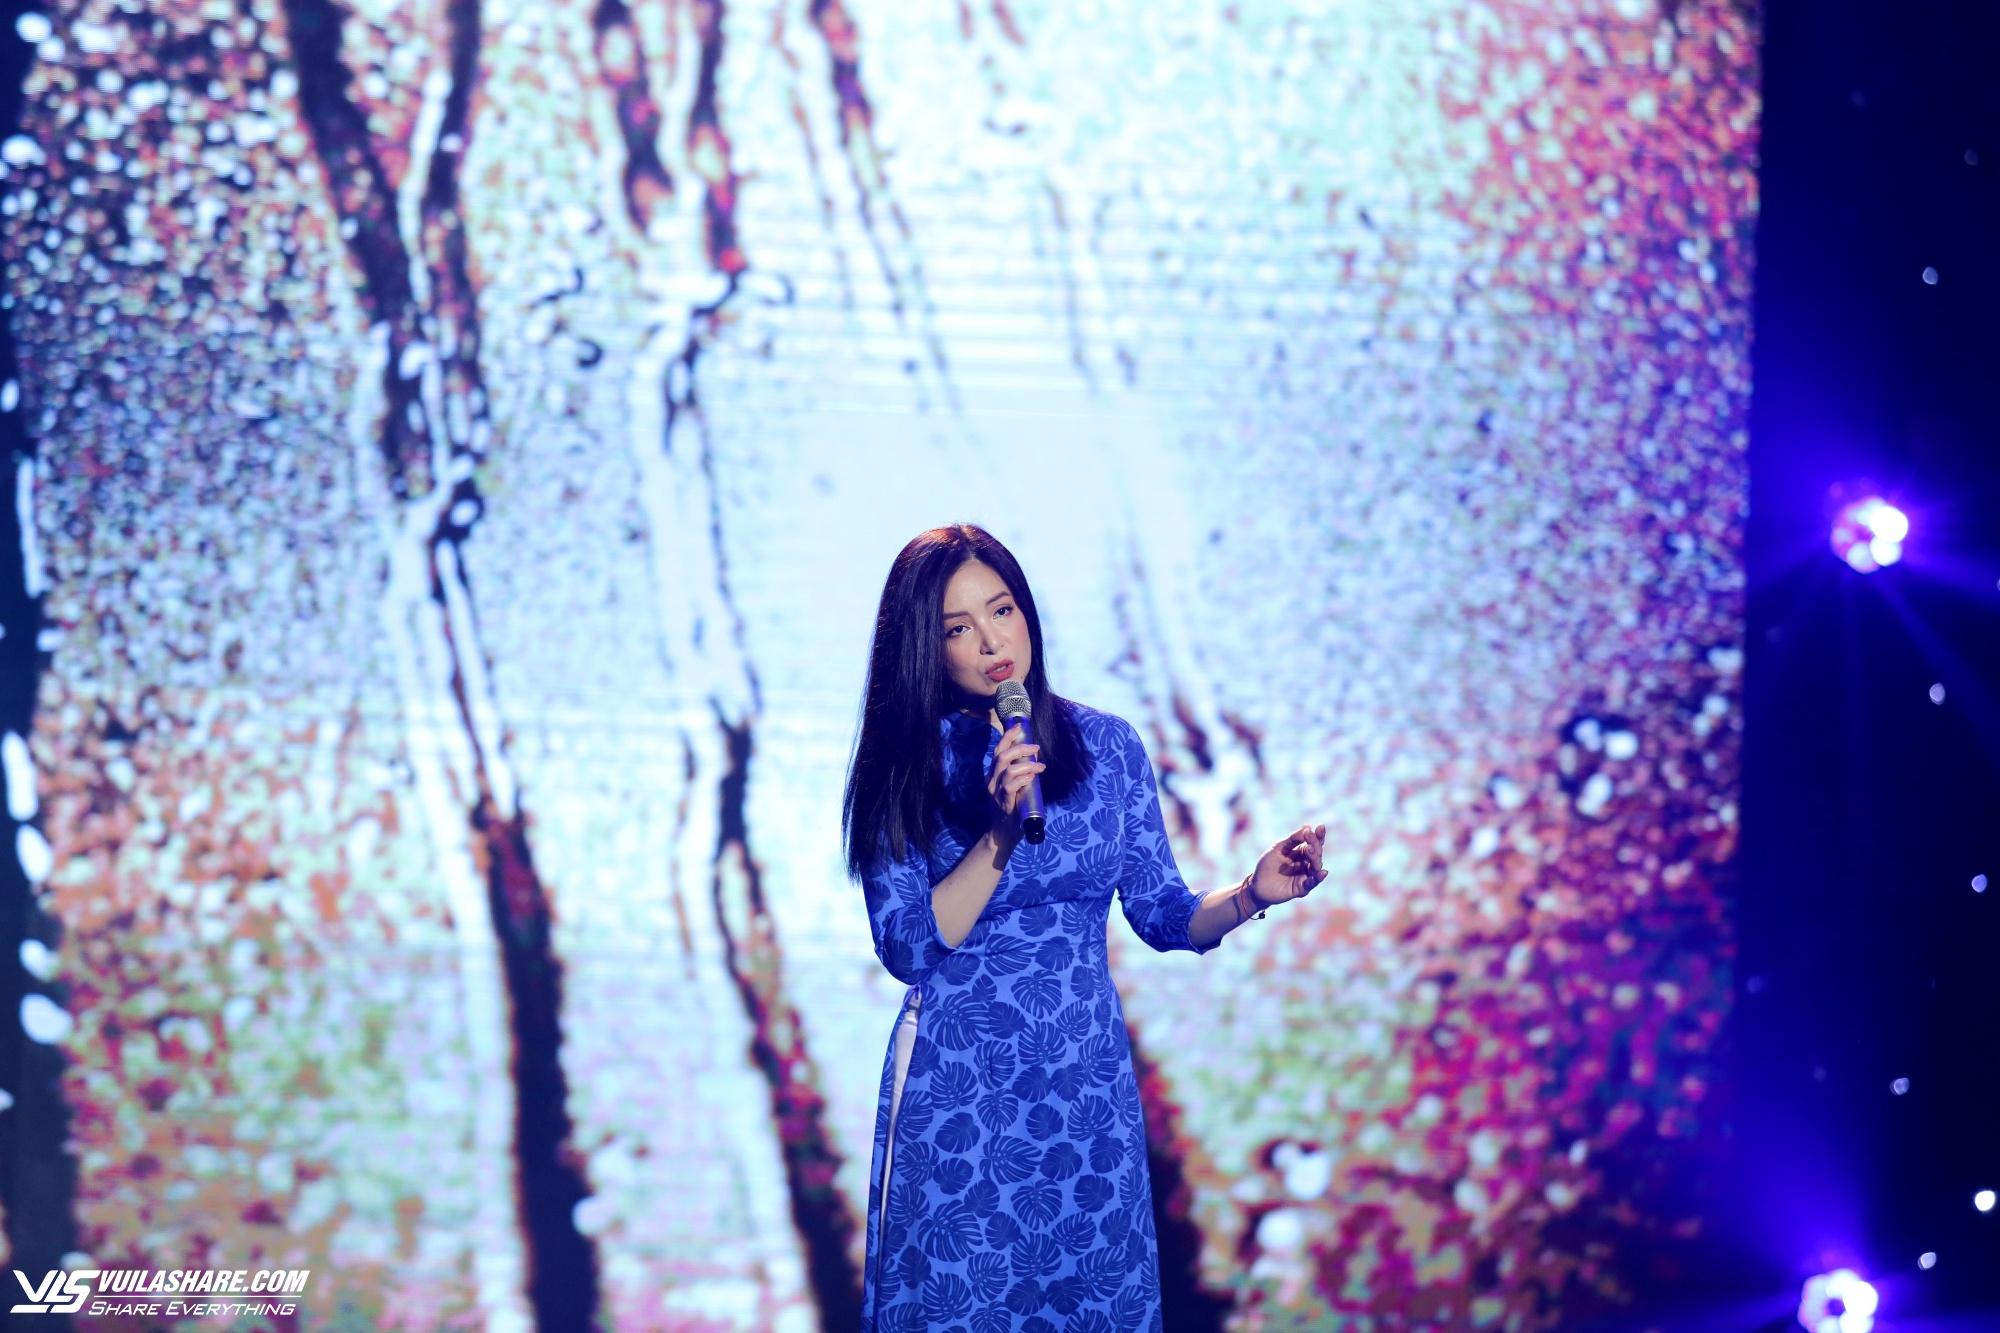 Ca sĩ Như Hảo tiết lộ tính cách nhạc sĩ 'Mùa xuân ơi' khi làm việc chung- Ảnh 2.